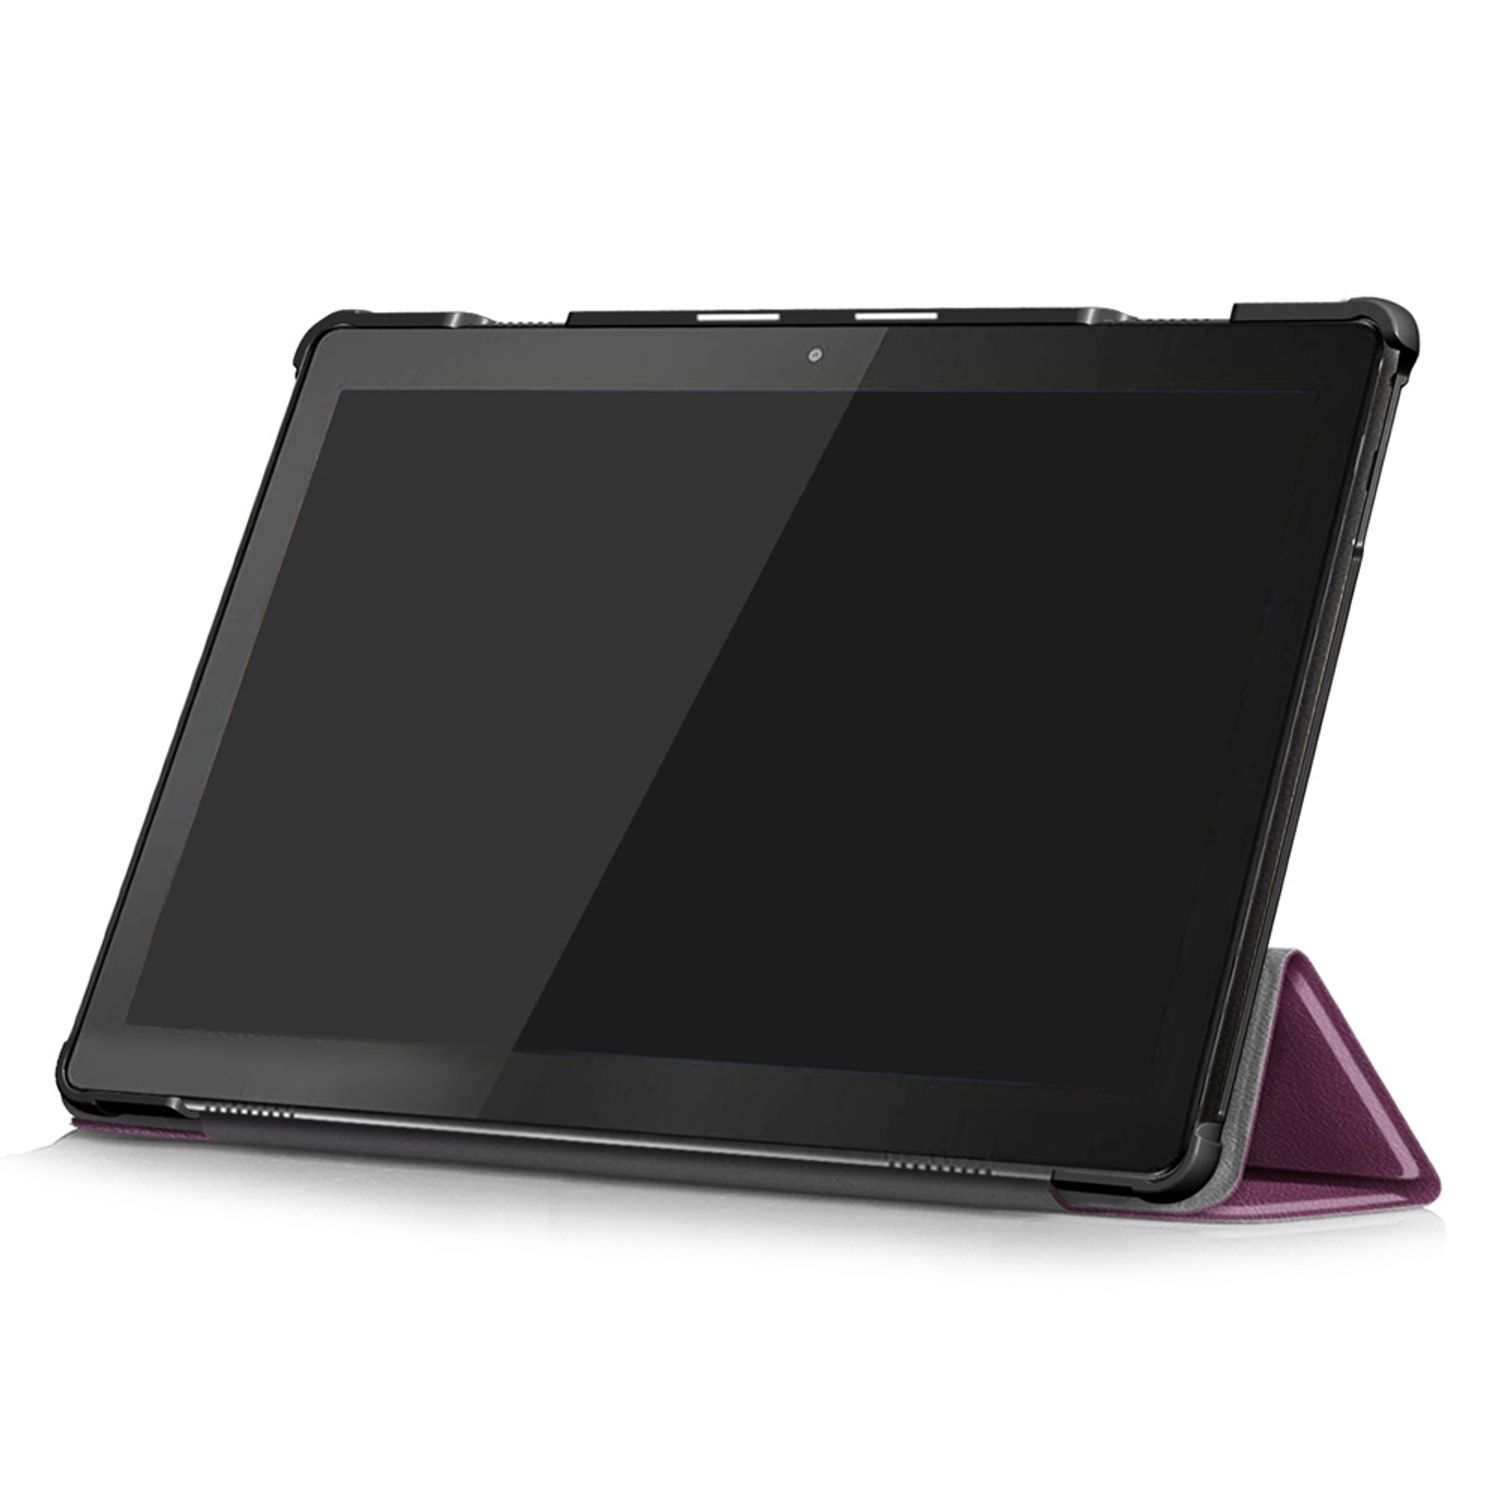 KÖNIG DESIGN Violett Tablet-Hülle Kunstleder, Tablet-Hülle Bookcover für Lenovo